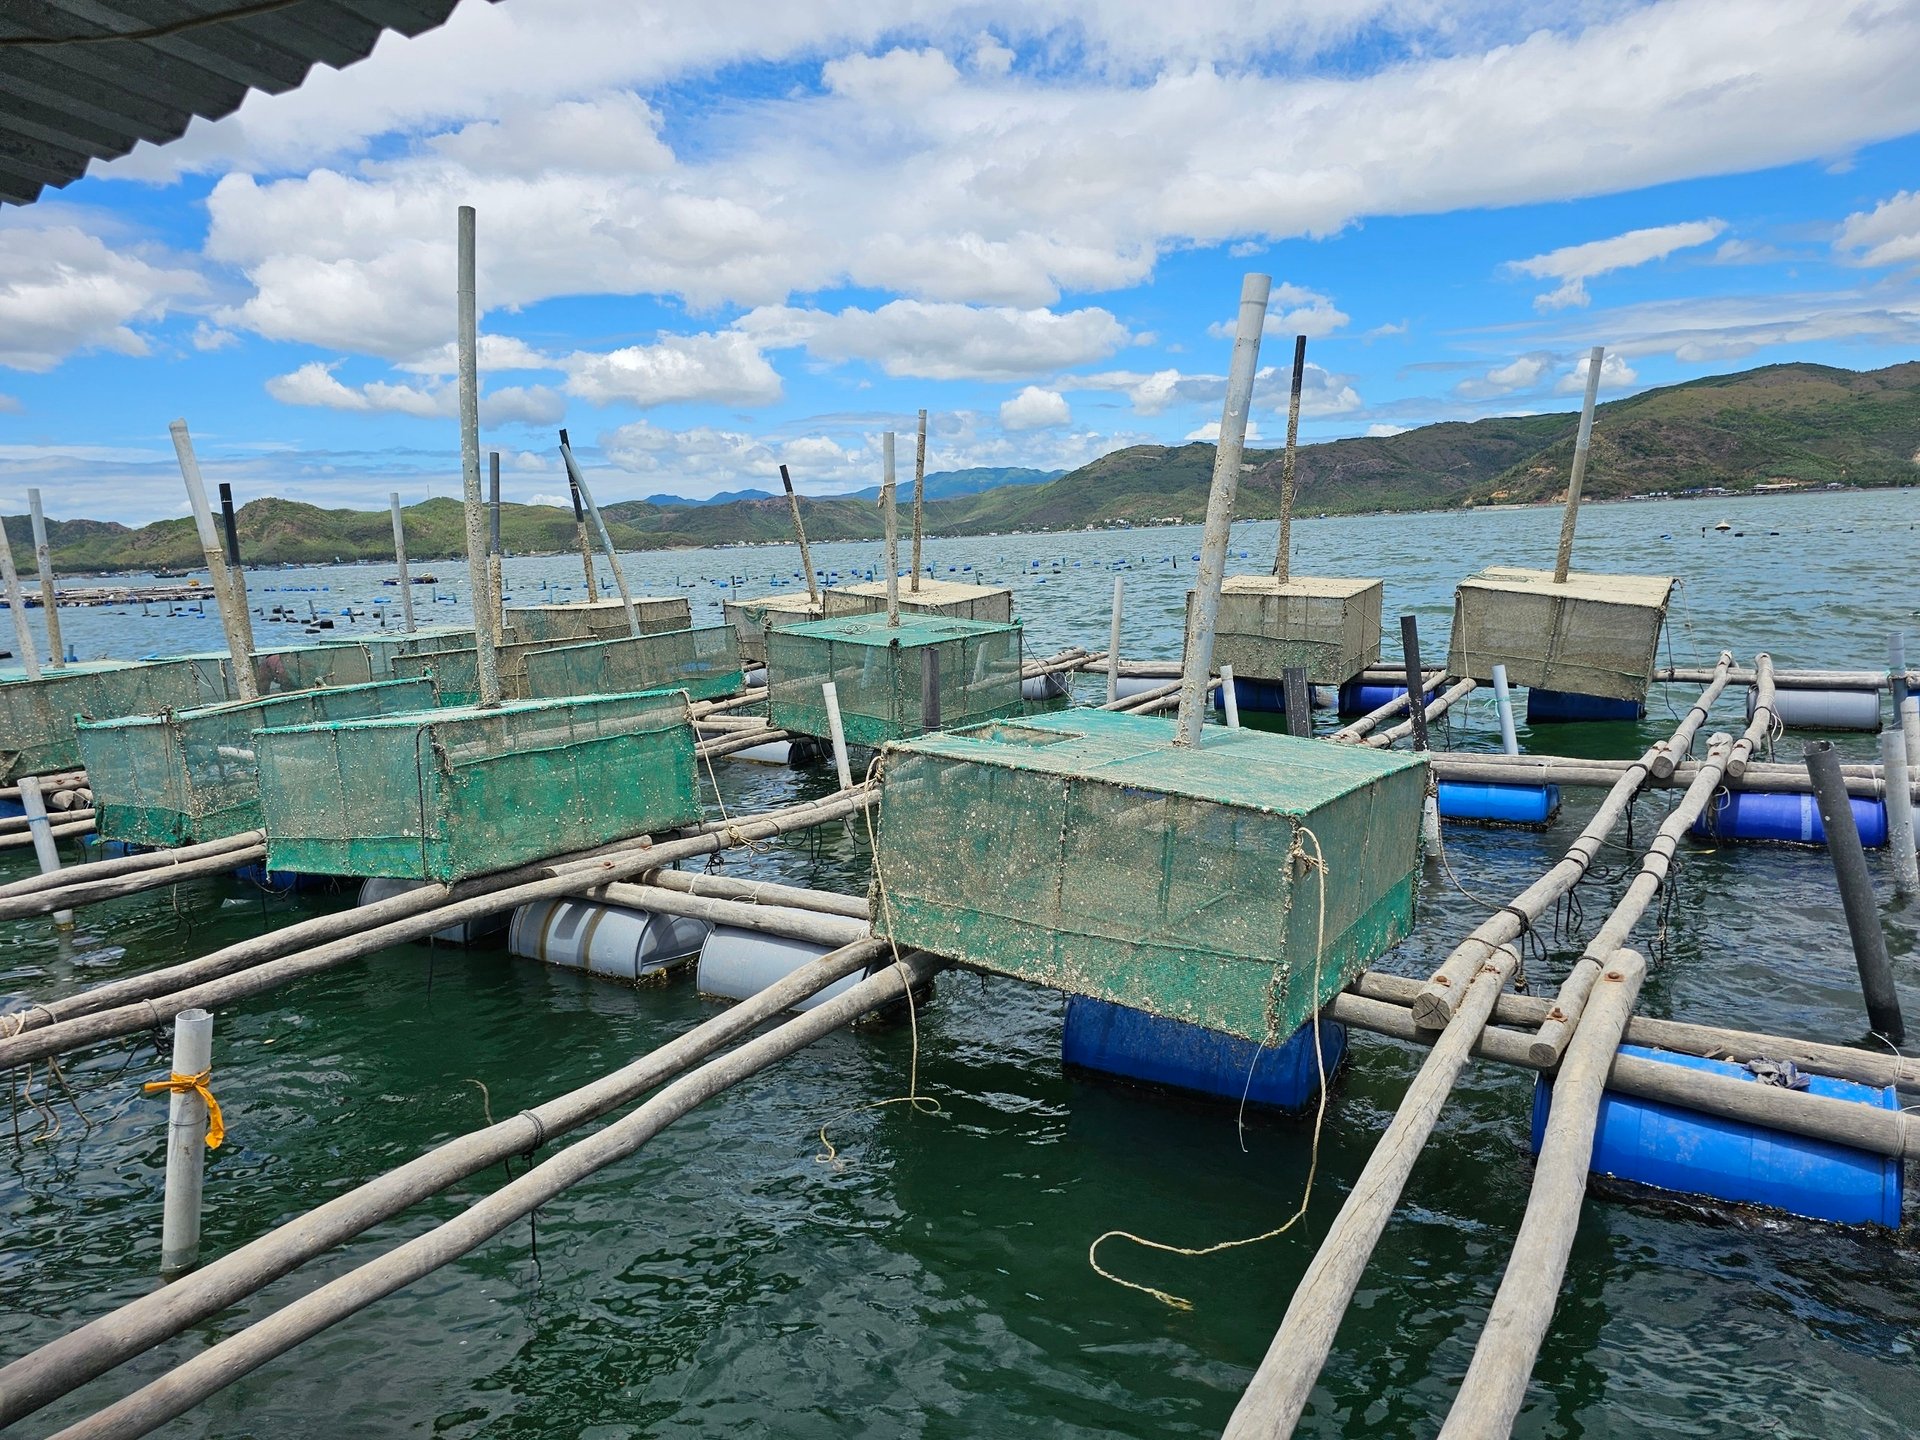 Nghề nuôi trồng thủy sản bằng lồng bè trên biển của tỉnh Phú Yên phát triển khá mạnh với hơn 100.000 ô lồng trên diện tích khoảng 1.500 ha mặt nước.